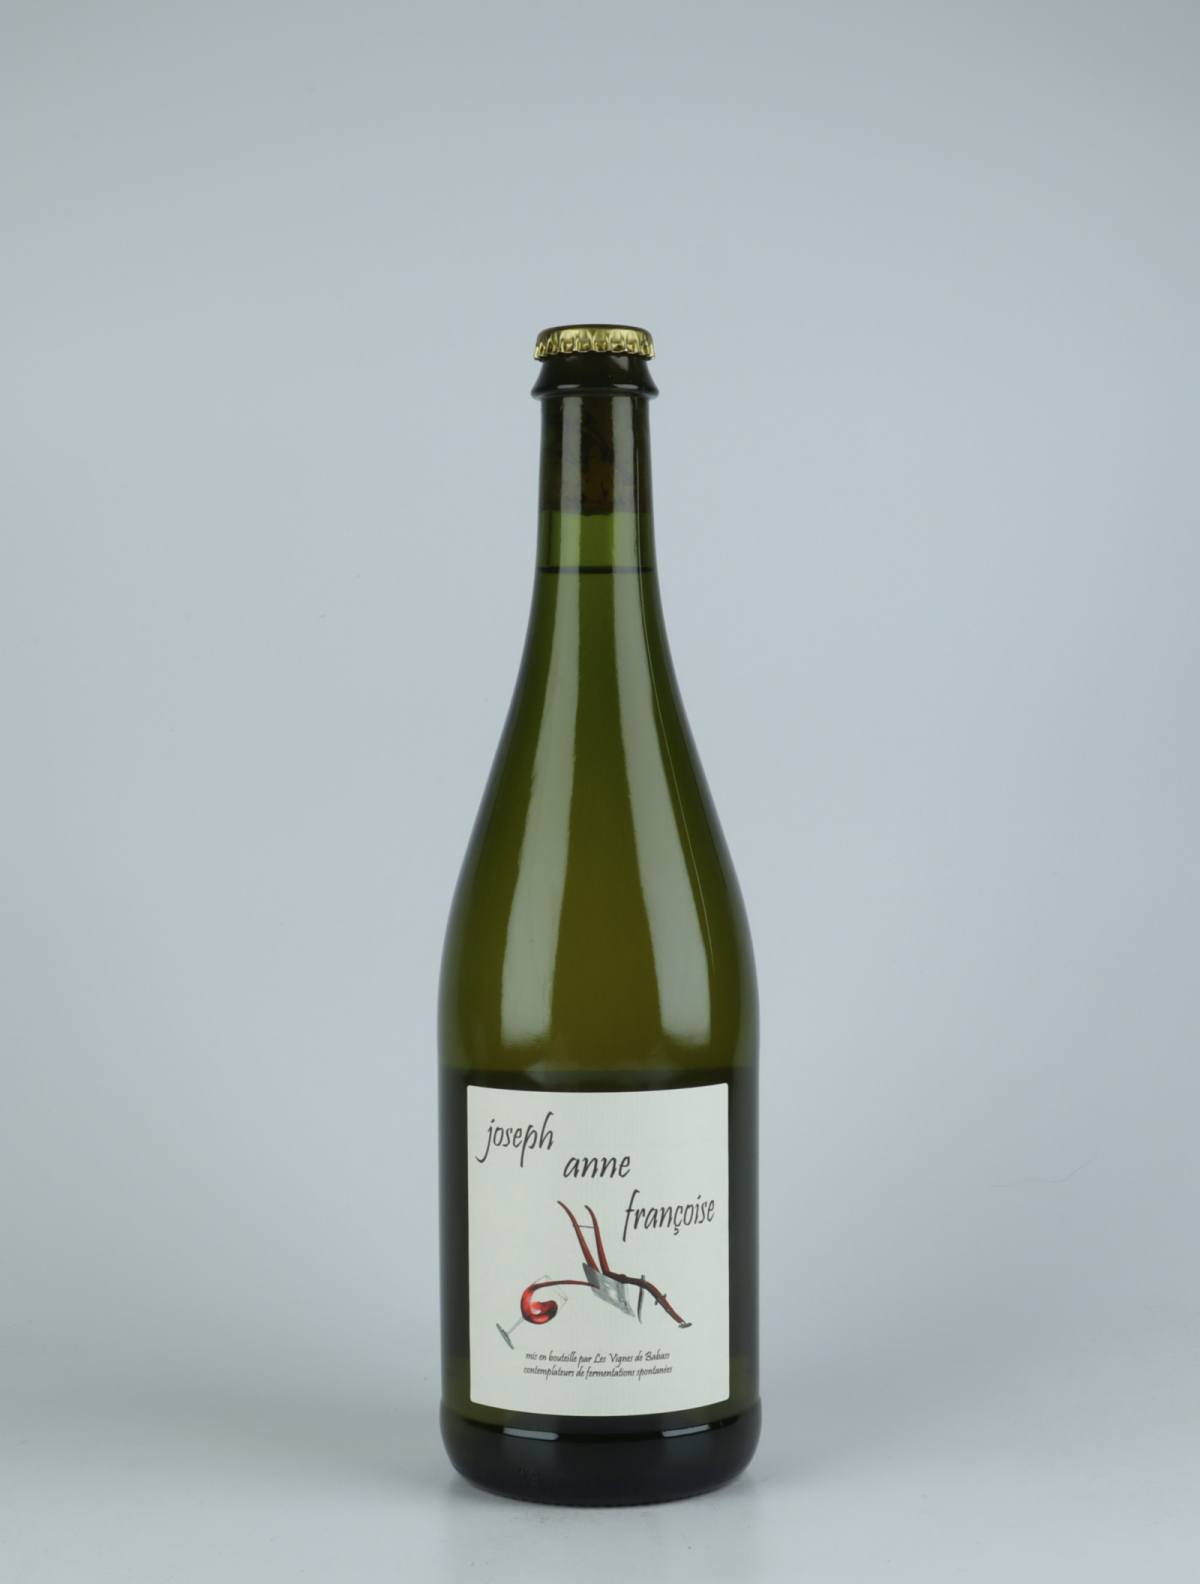 A bottle 2019 Joseph Anne Françoise White wine from Les Vignes de Babass, Loire in France